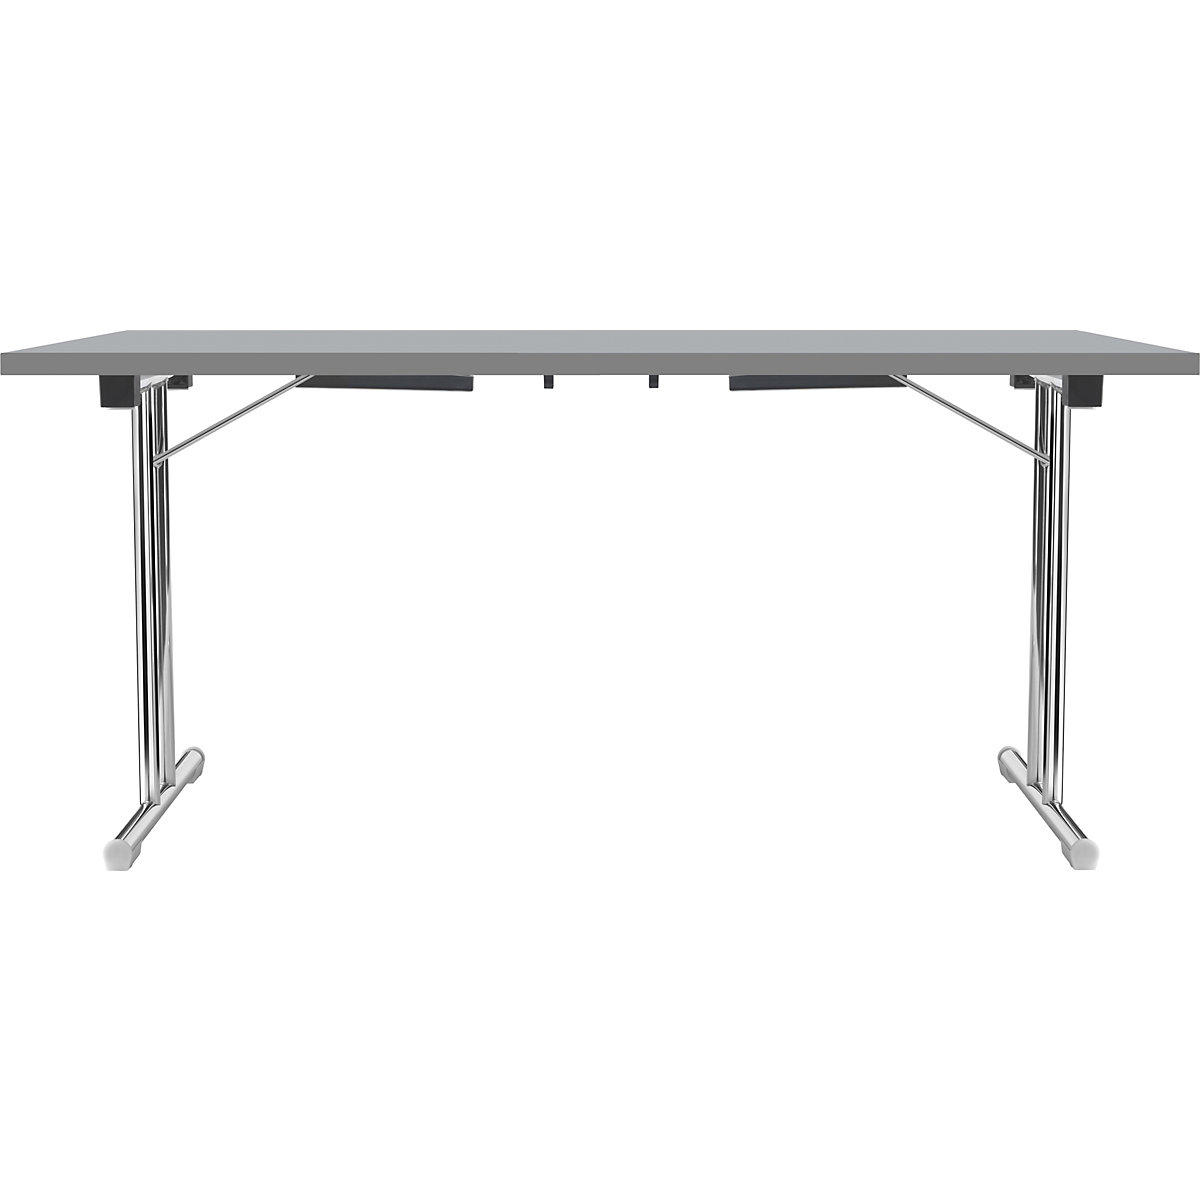 Inklapbare tafel met dubbel T-vormig onderstel, frame van staalbuis, verchroomd, lichtgrijs/antraciet, b x d = 1400 x 700 mm-10